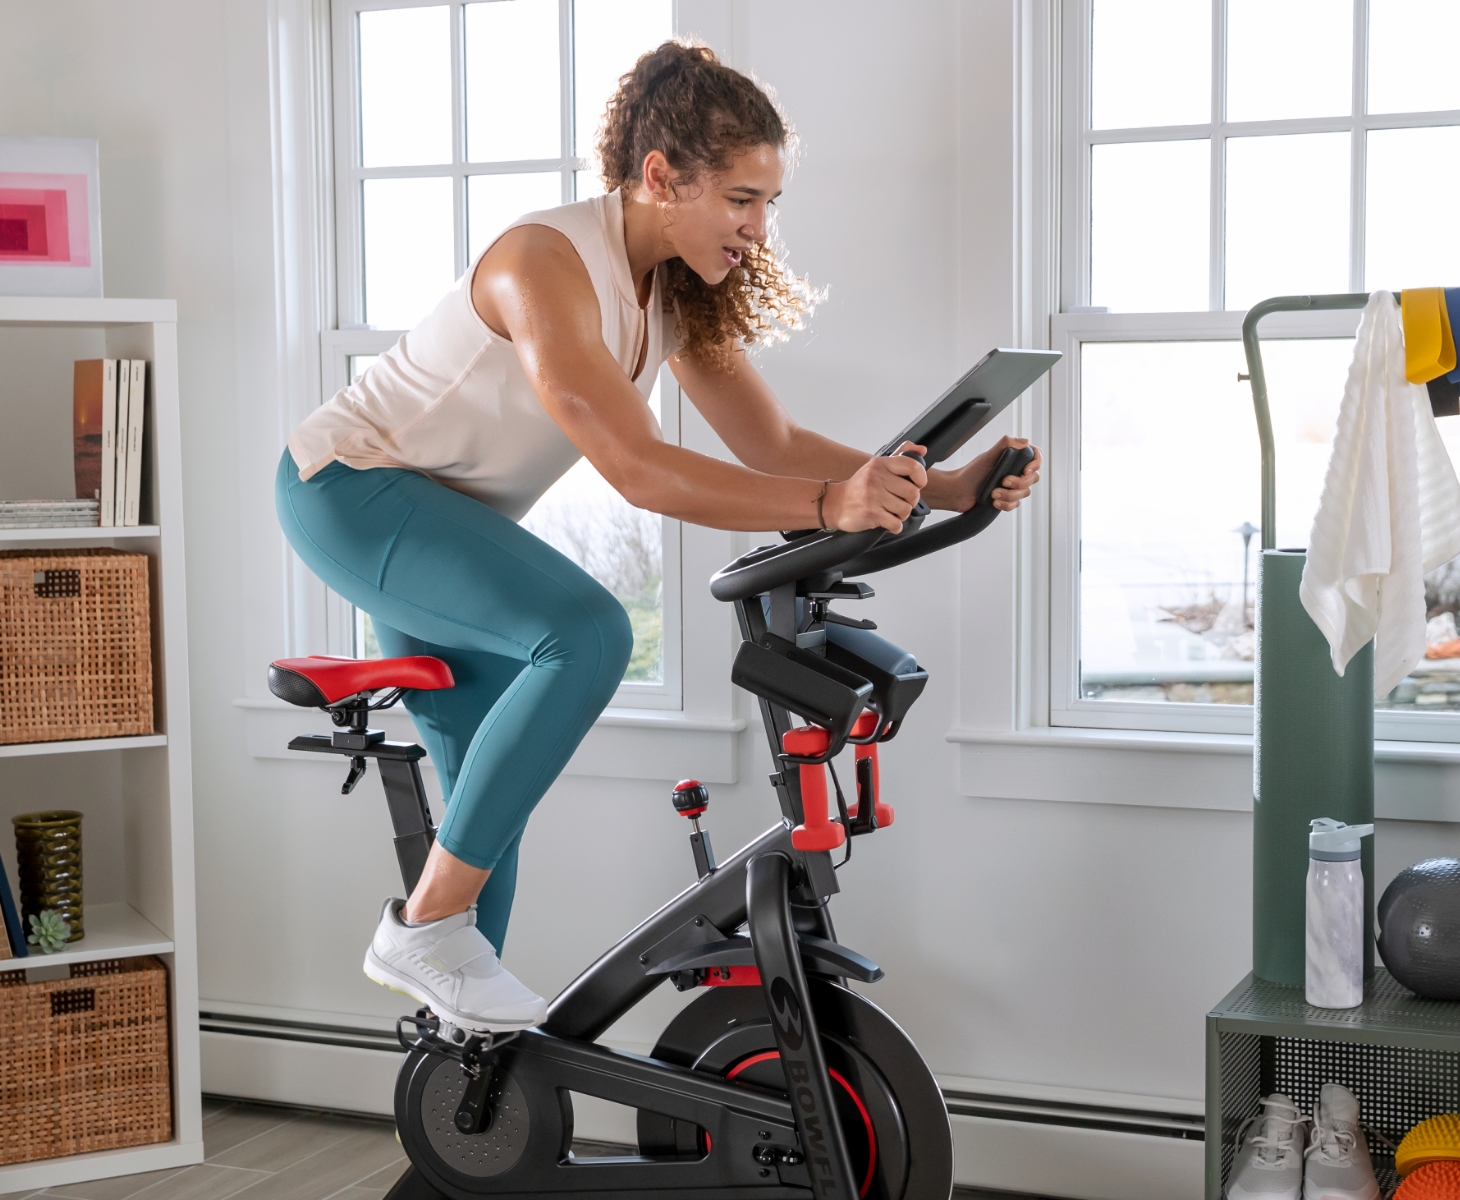 Bowflex Home Exercise Equipment - Bikes, Home Gyms, Treadmills | Bowflex